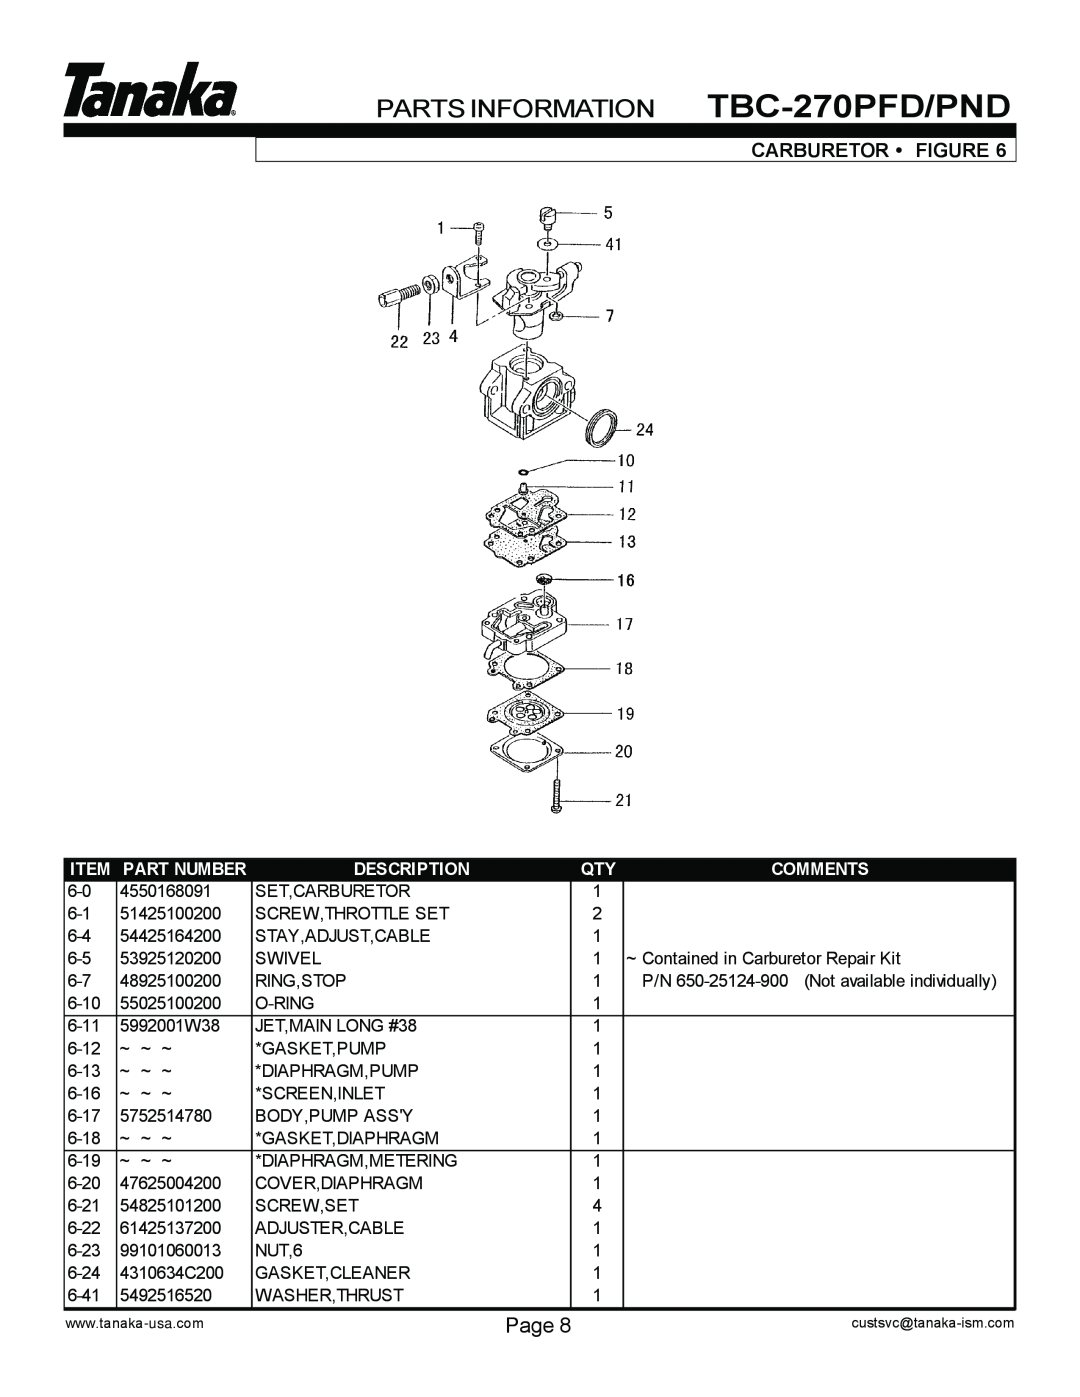 Tanaka manual PARTS INFORMATION TBC-270PFD/PND, Page, Carburetor Figure, Item Part Number, Description, Comments 